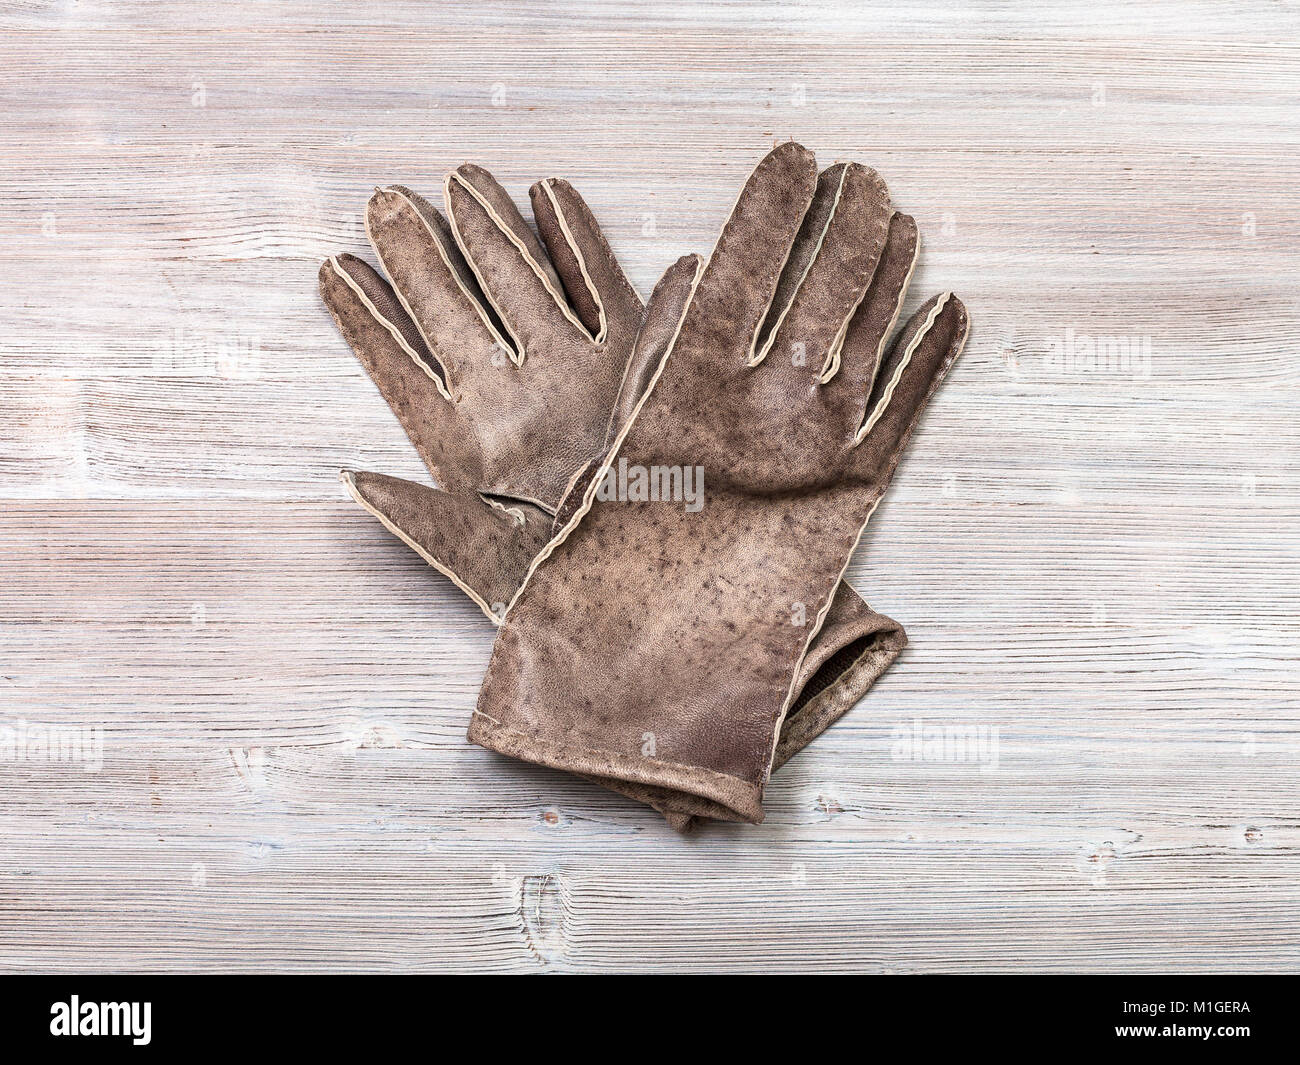 Workshop zu nähen Handschuhe - Ansicht von oben neue handgefertigte Leder  Handschuhe auf Holz- Hintergrund Stockfotografie - Alamy